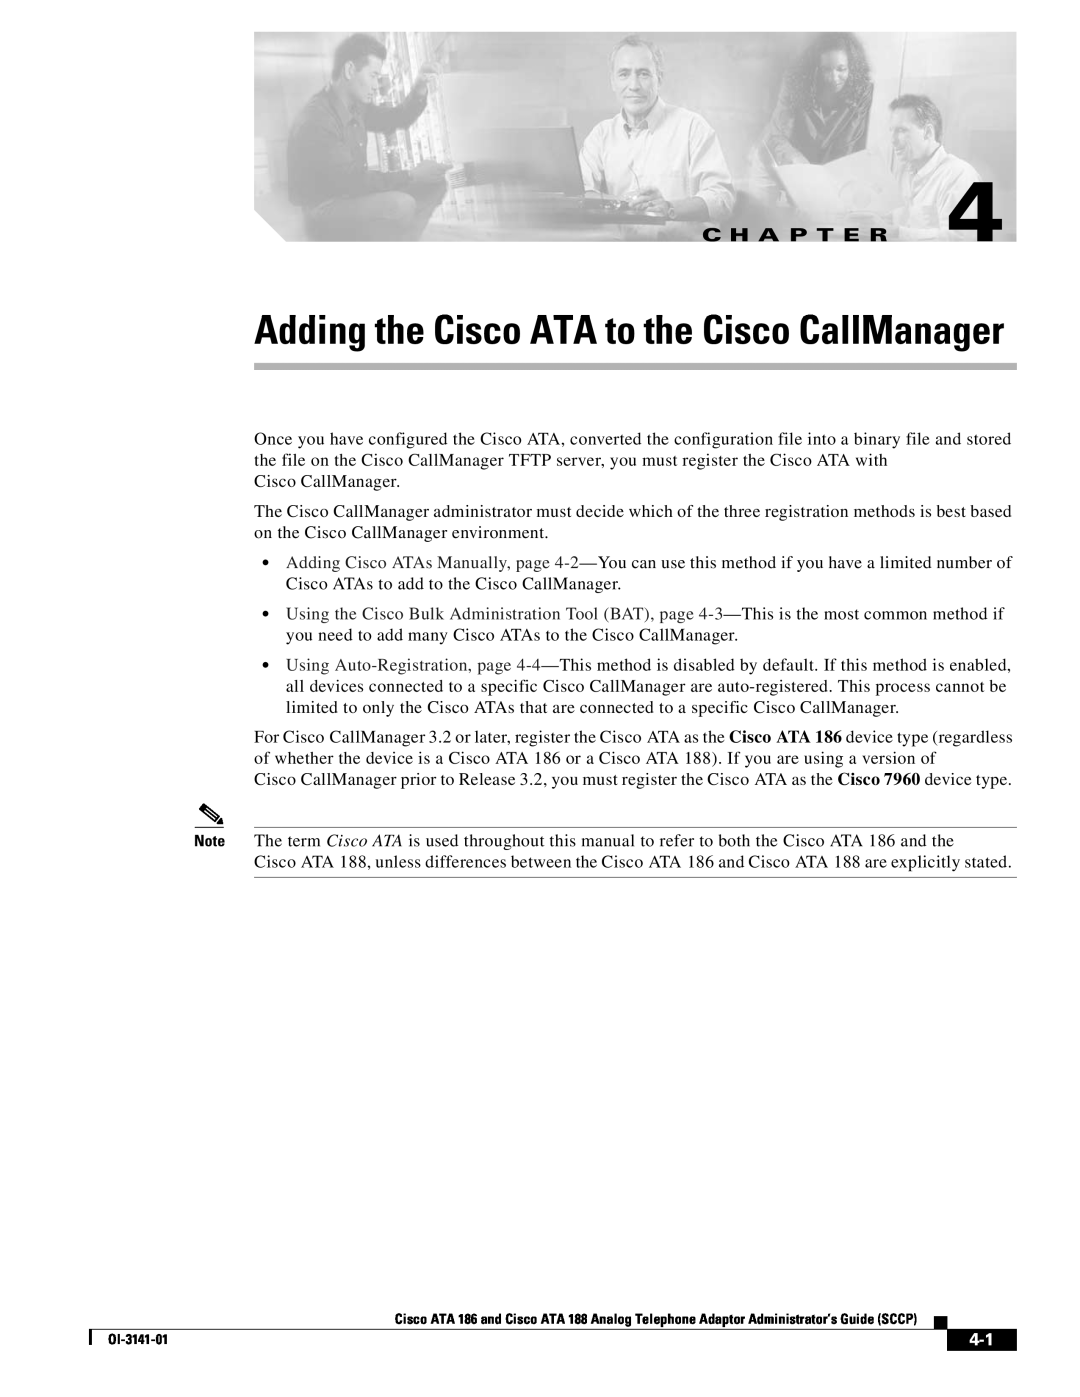 Cisco Systems ATA 188, ATA 186 manual Adding the Cisco ATA to the Cisco CallManager, C H A P T E R 